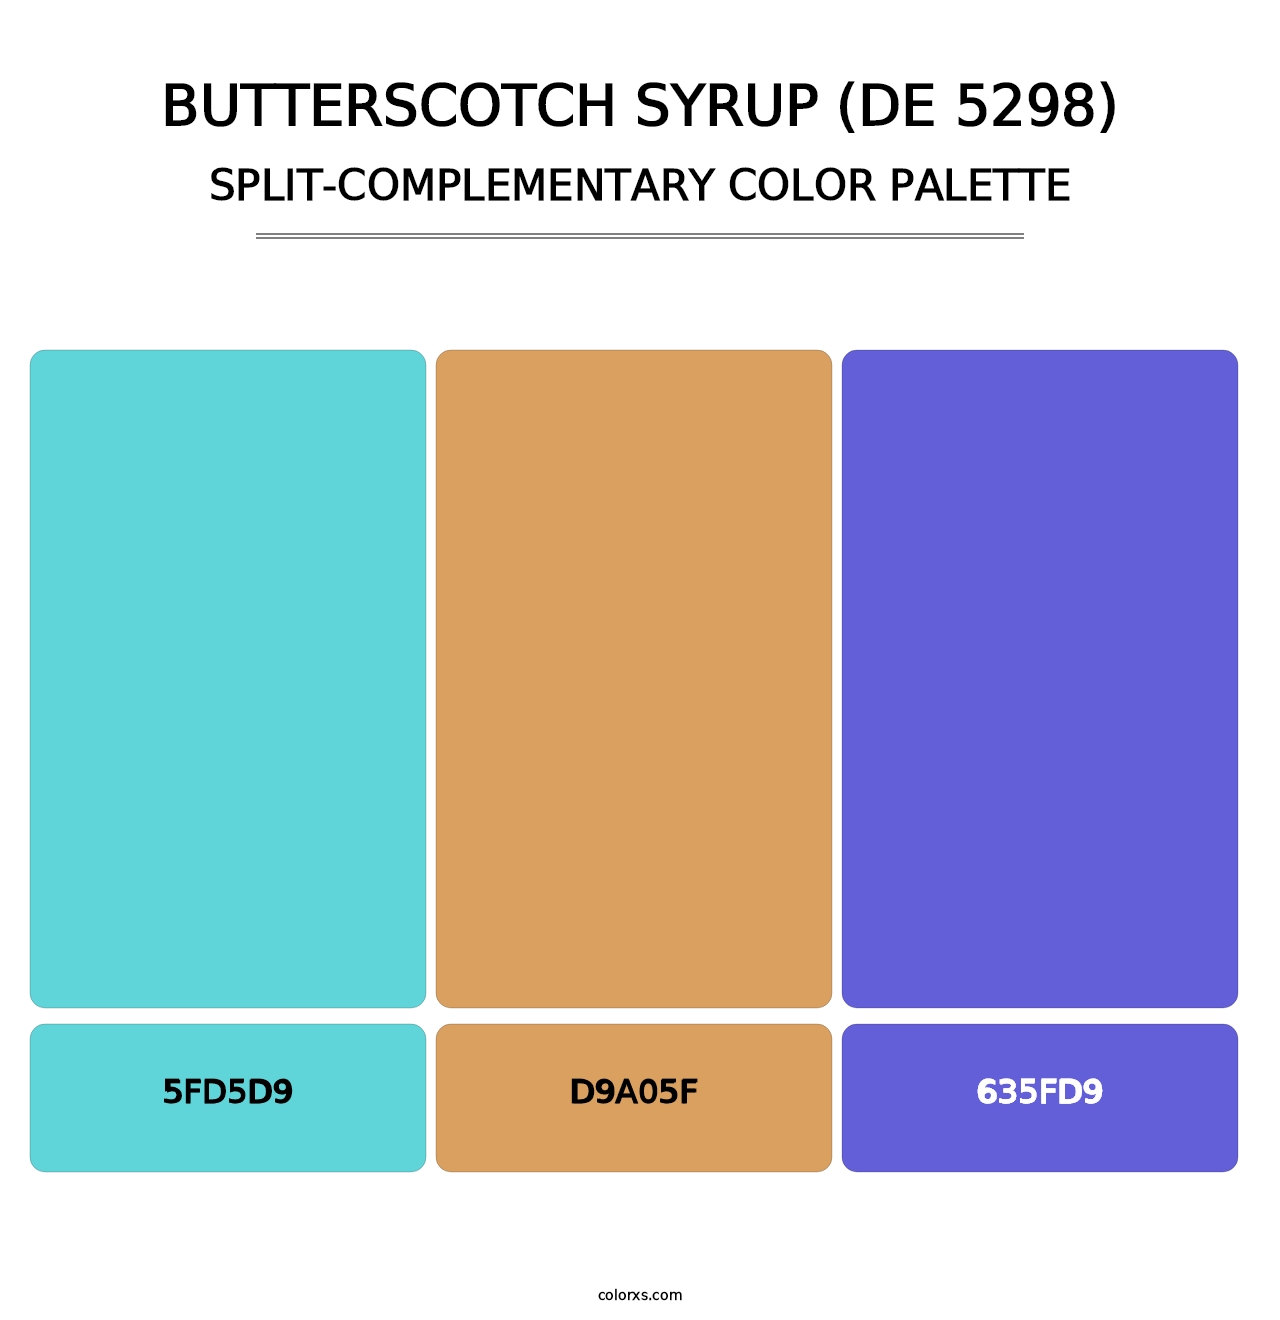 Butterscotch Syrup (DE 5298) - Split-Complementary Color Palette